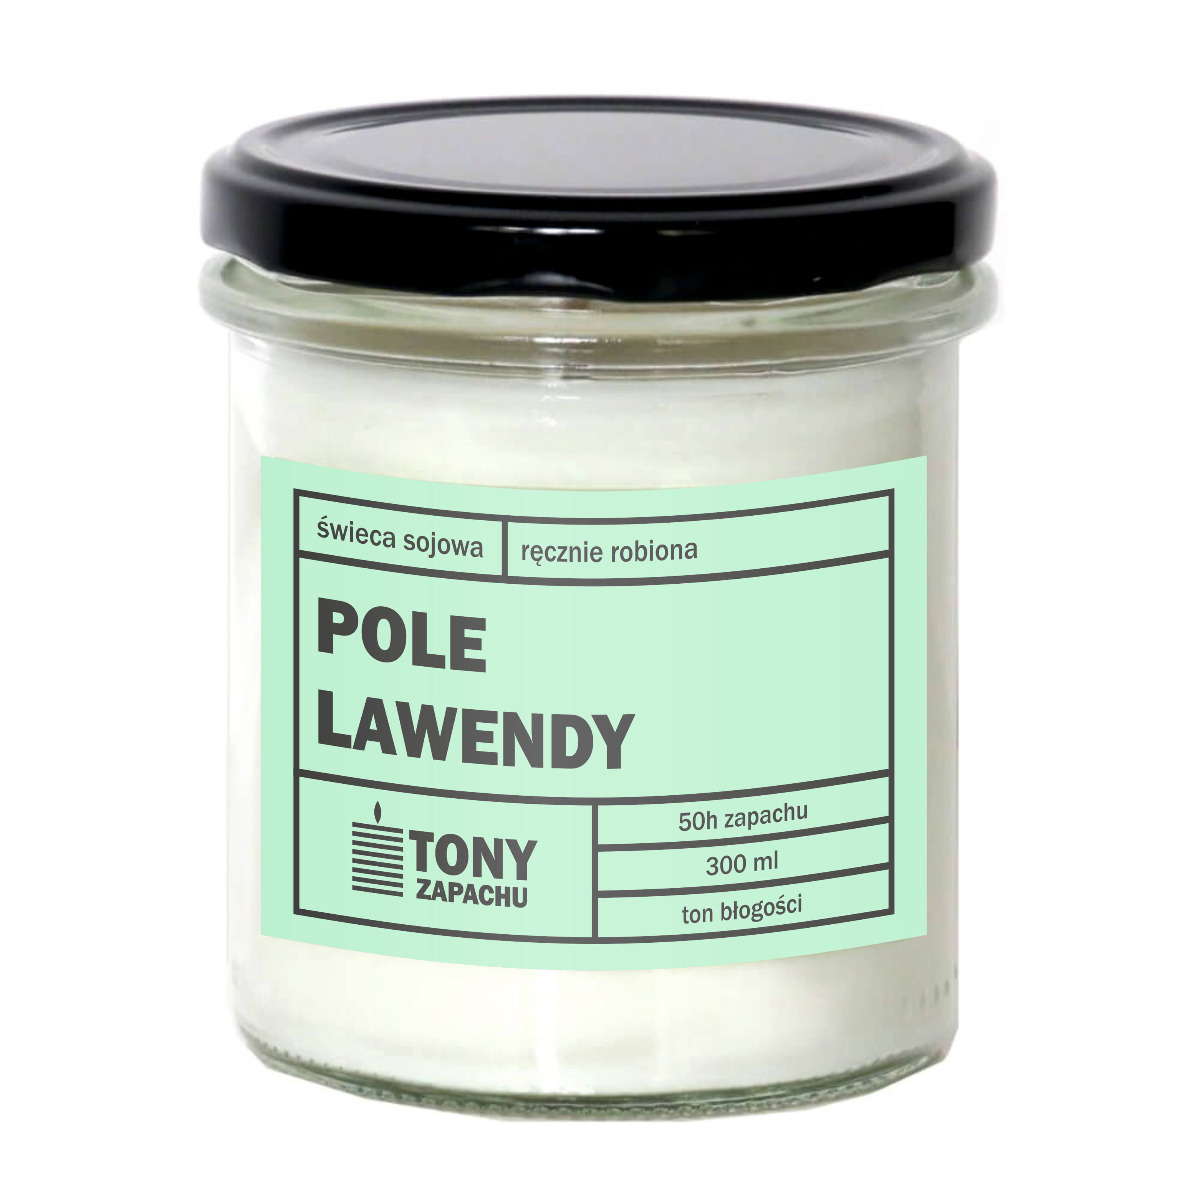 Świeca sojowa POLE LAWENDY - aromatyczna ręcznie robiona naturalna świeca zapachowa w słoiczku 300ml